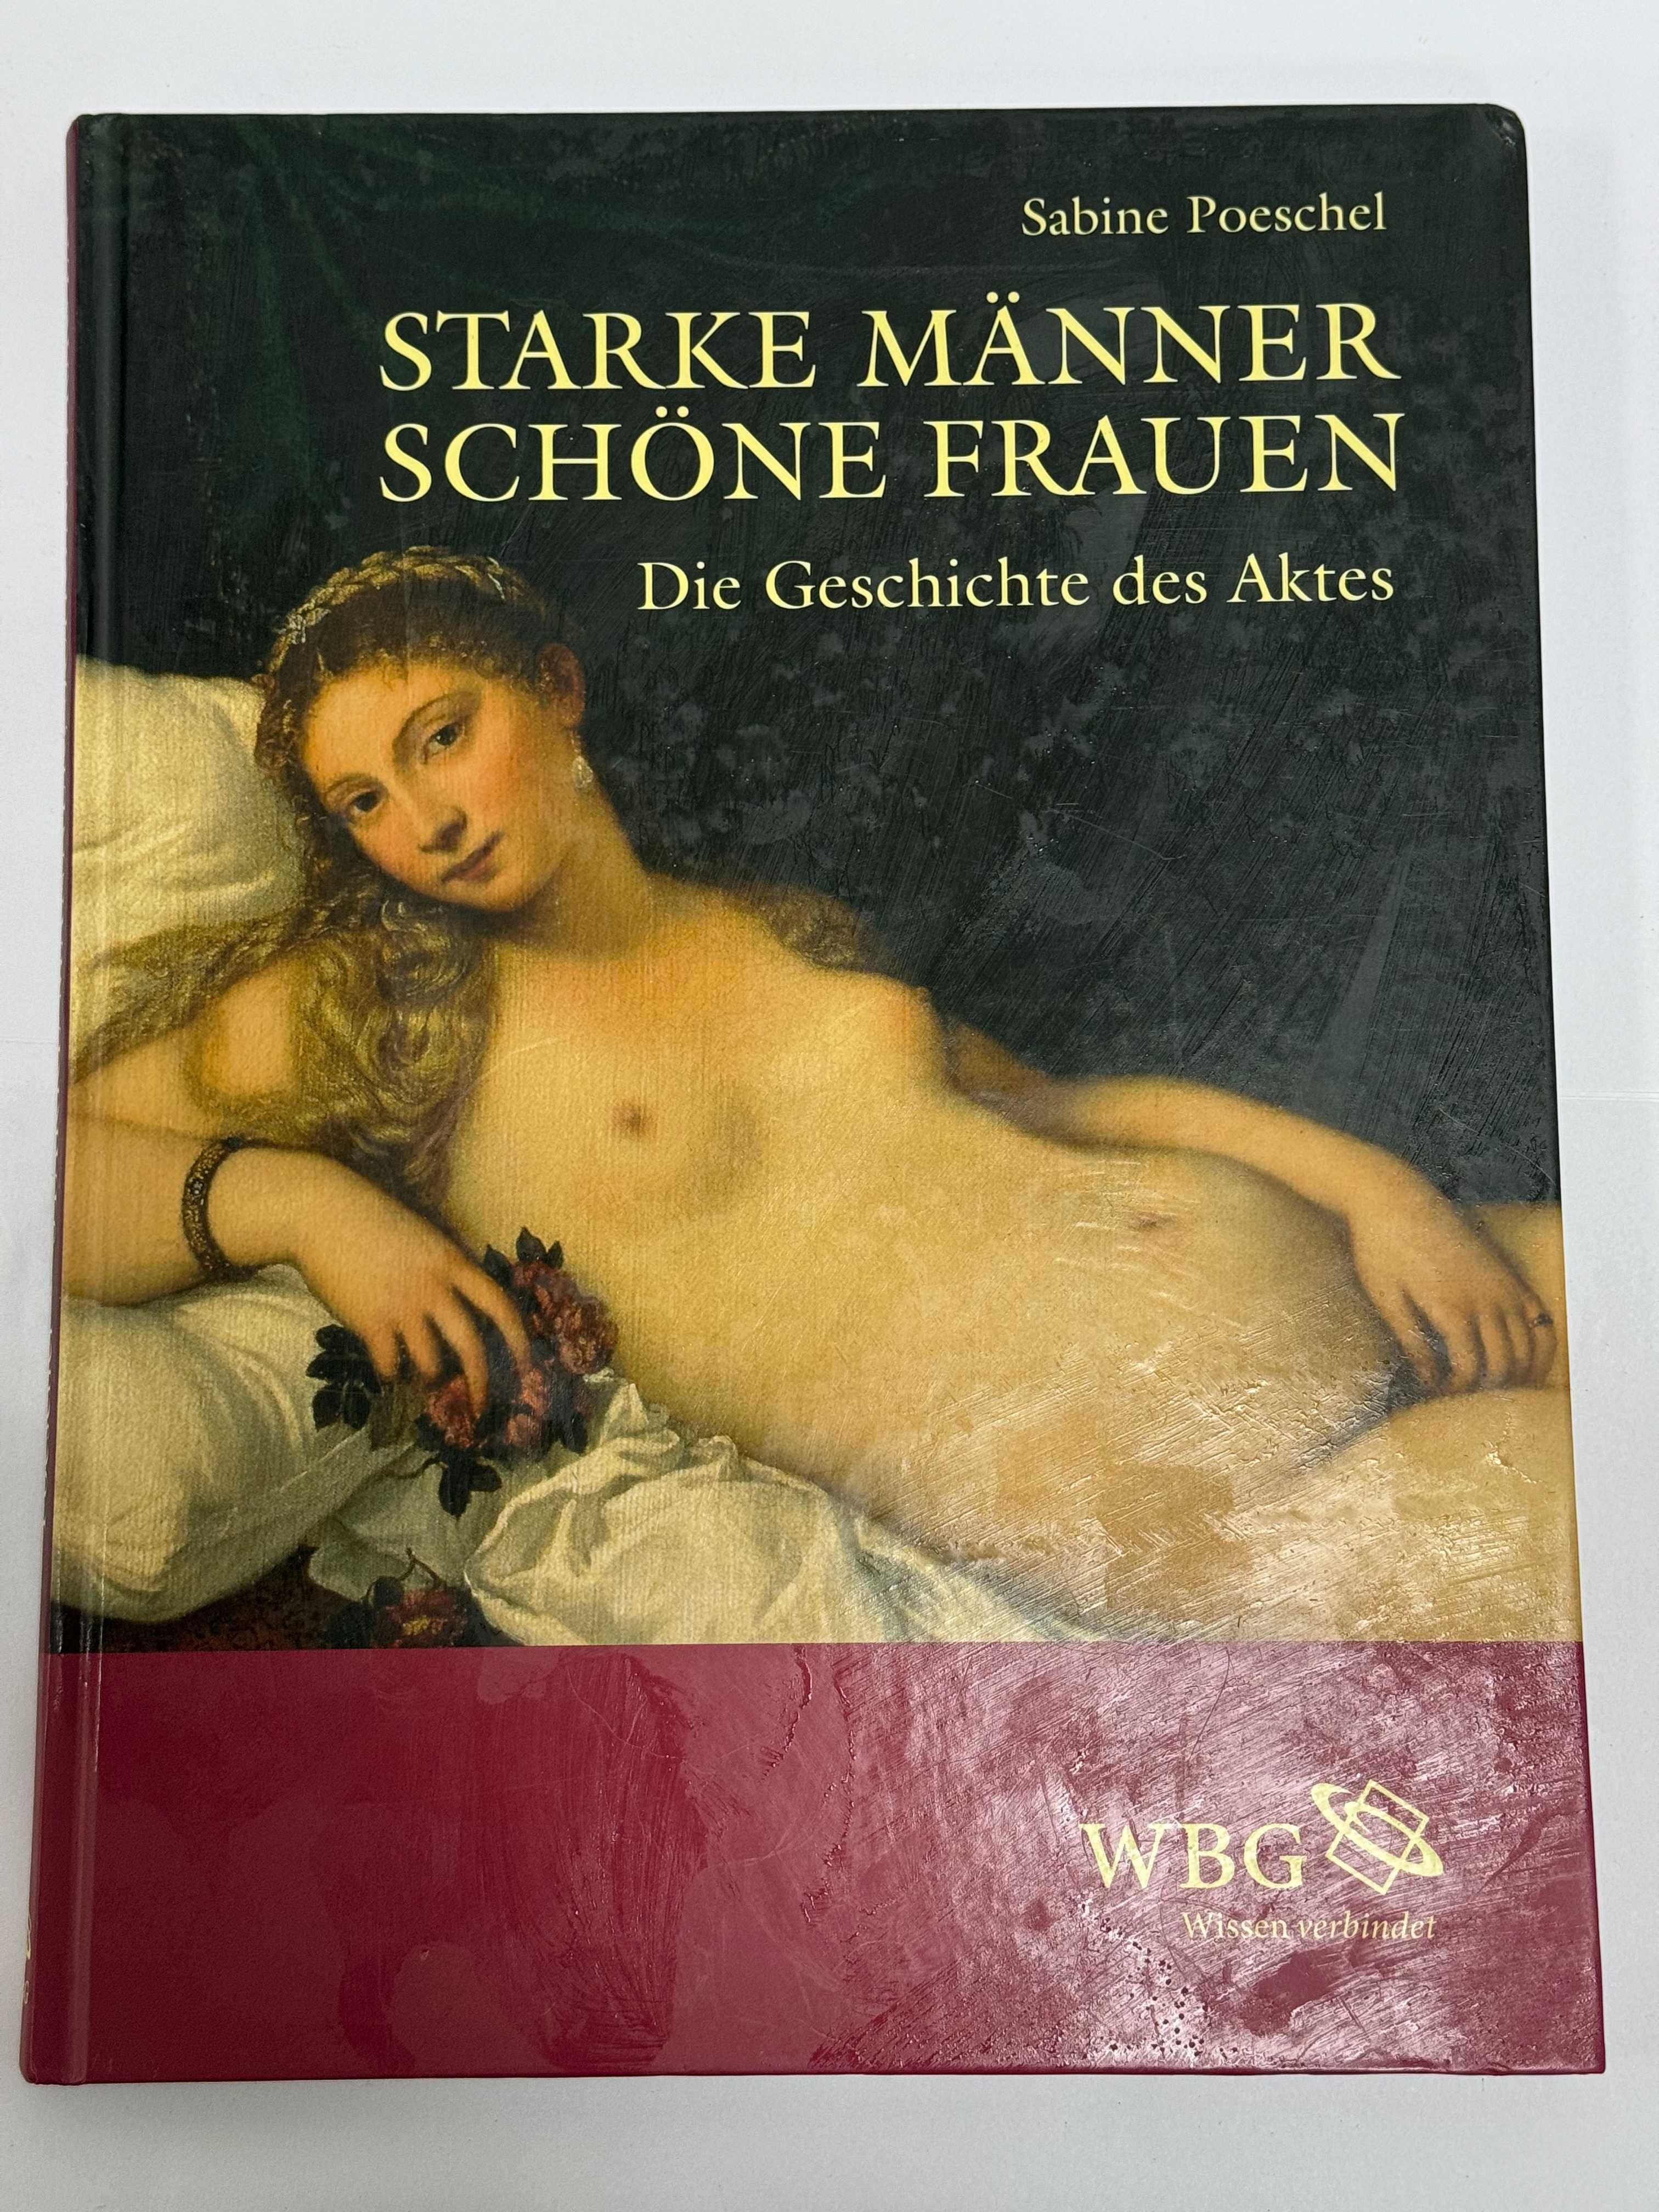 Starke Manner Schone Frauen: Die Geschichte des Aktes.